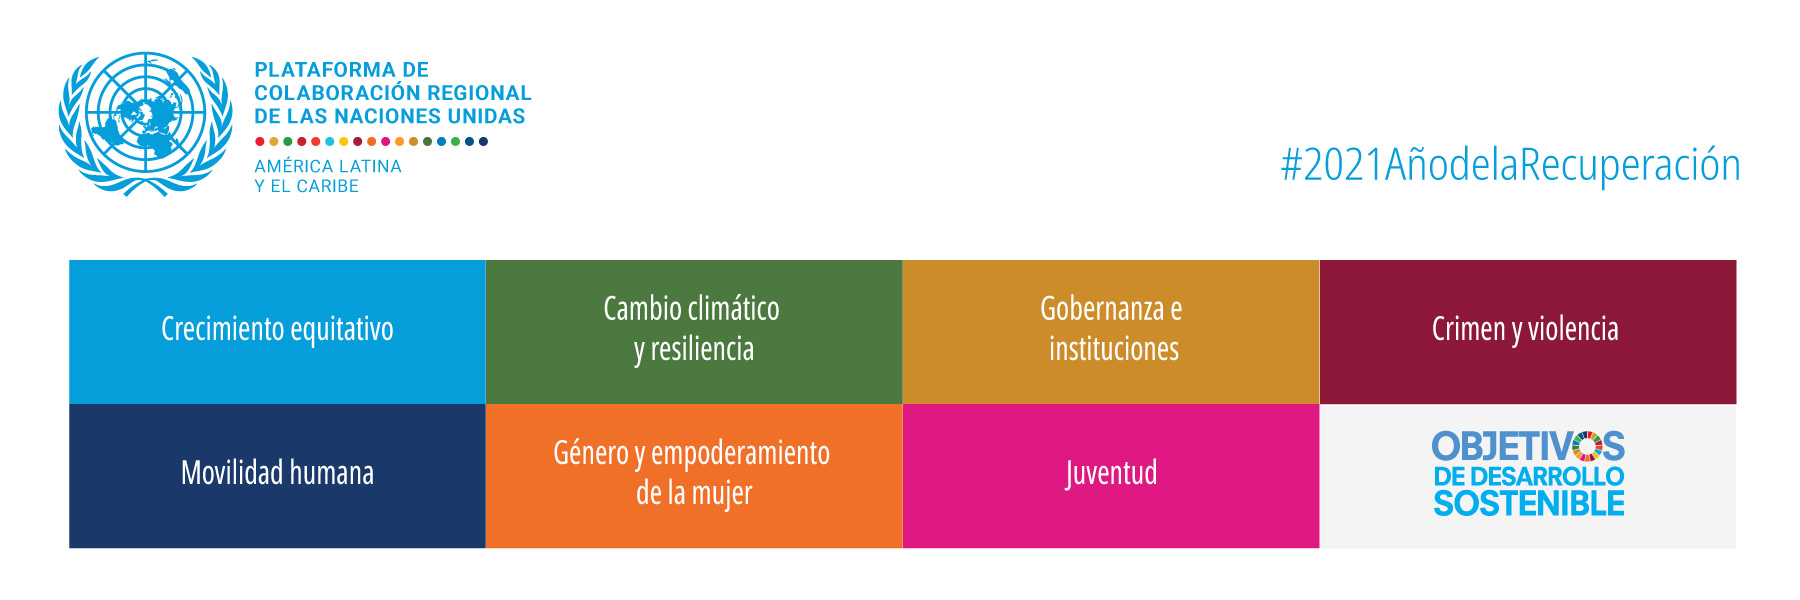 Plataforma de Colaboración Regional para América Latina y el Caribe, RCPLAC